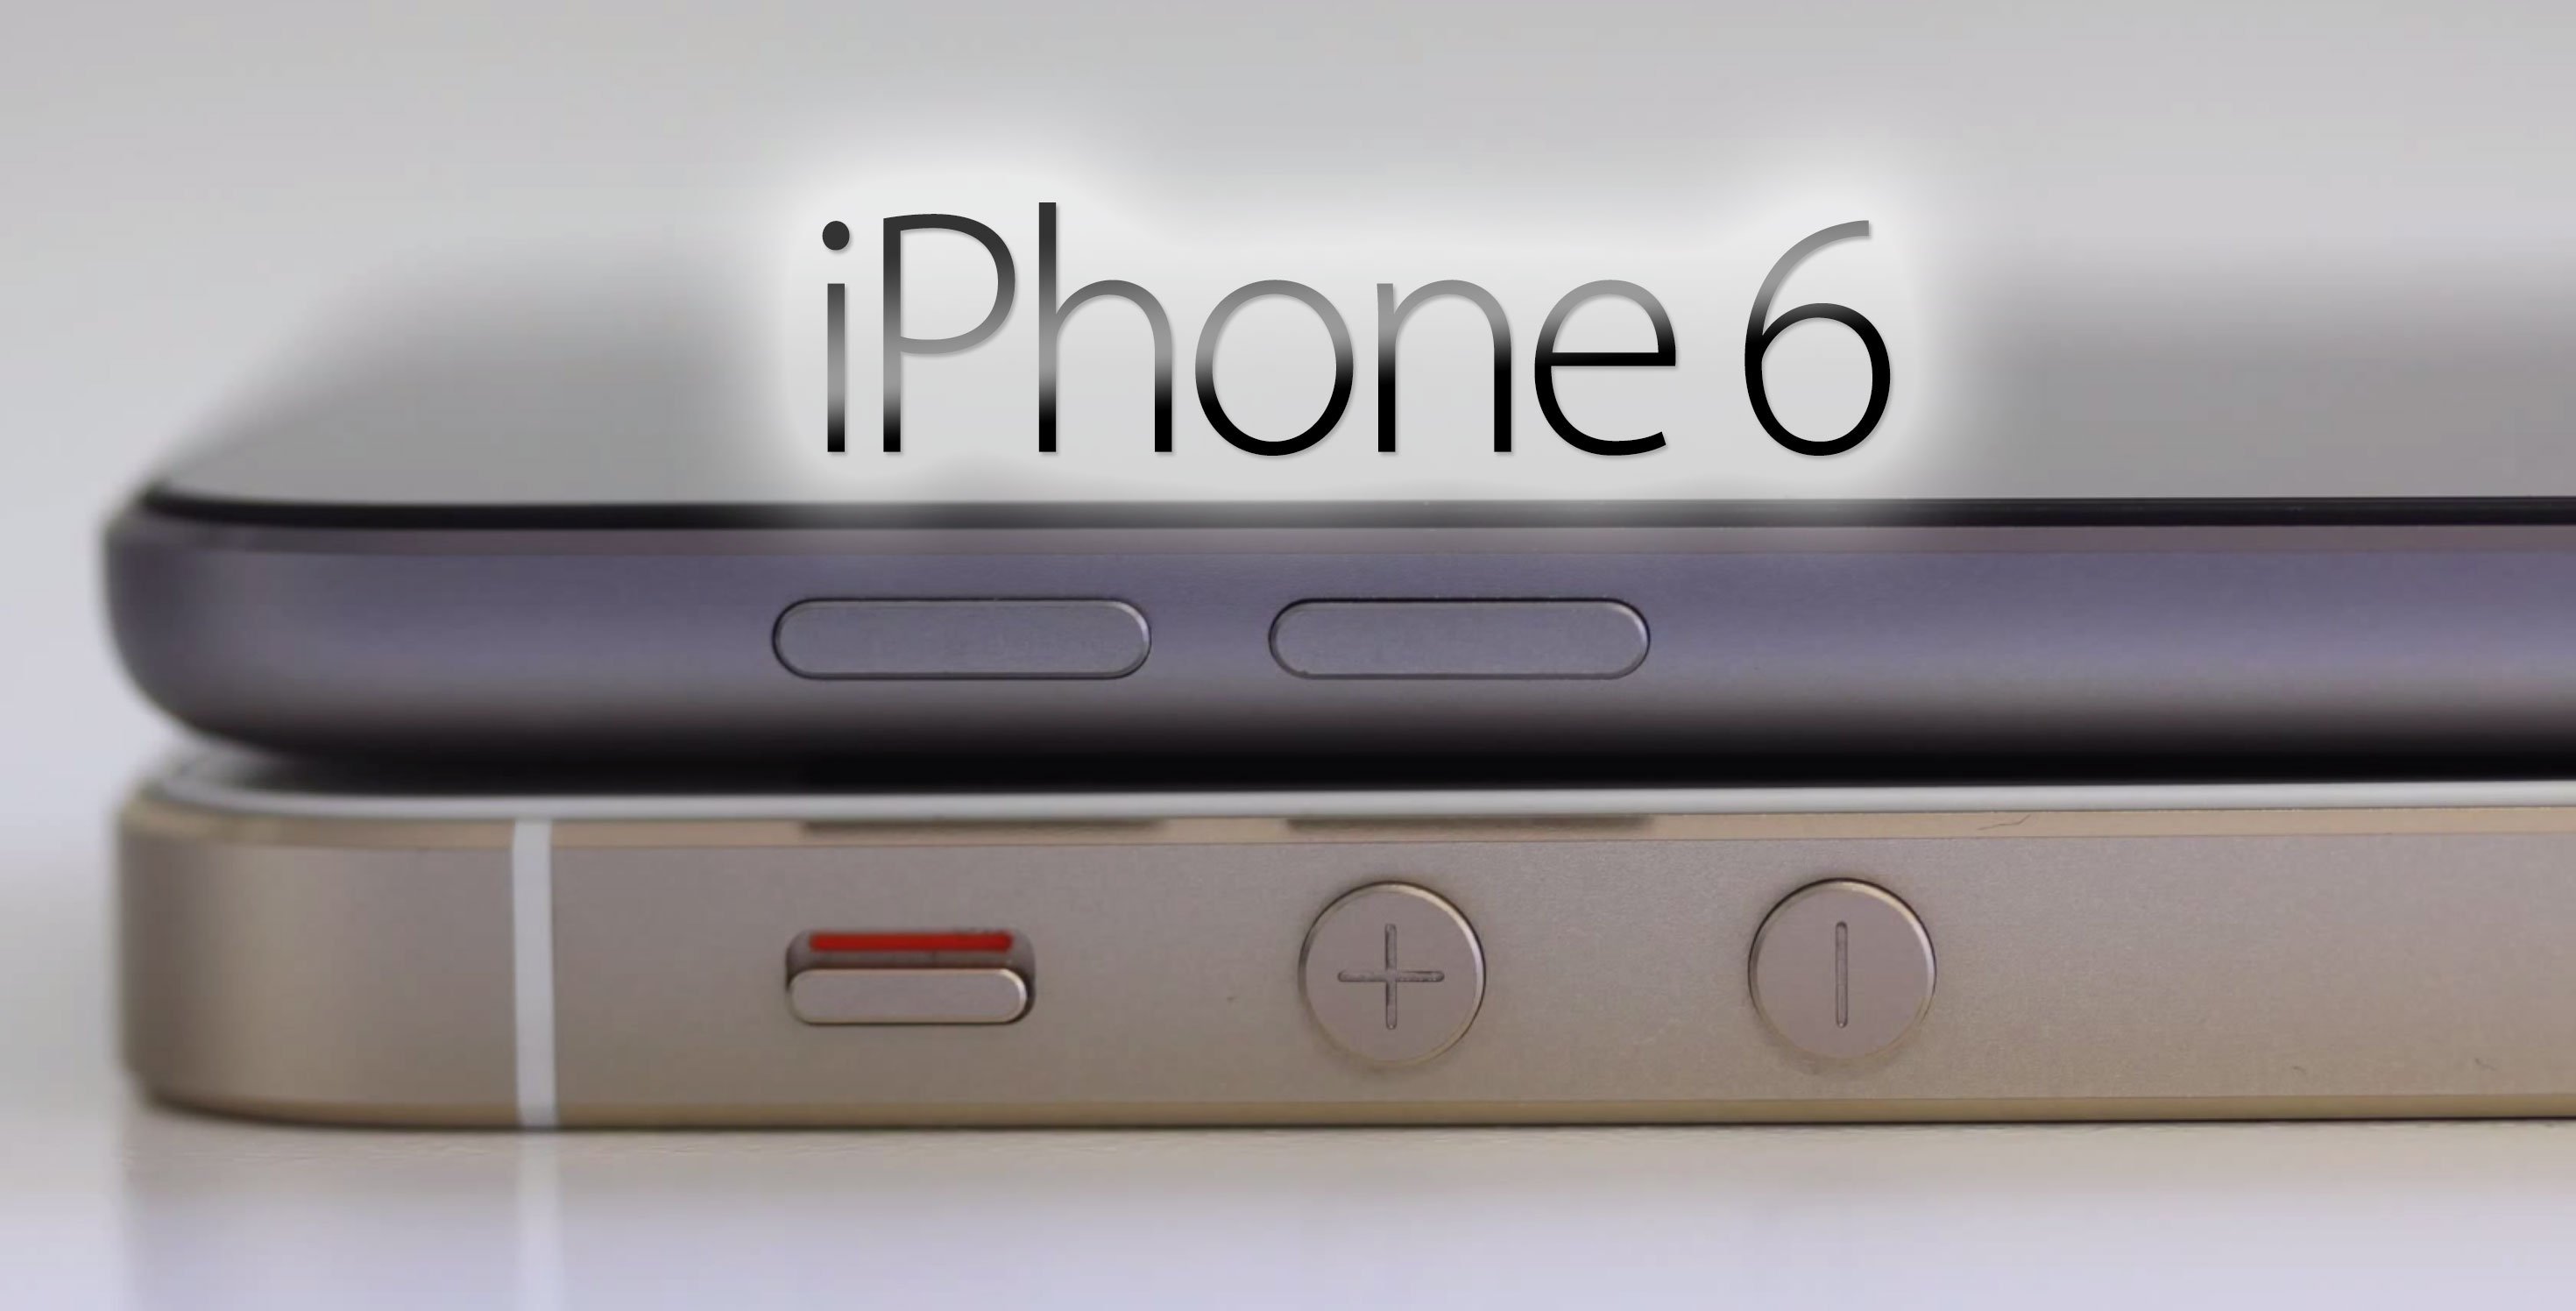 iPhone 6 kommt früher als erwartet - 4,7" iPhone 6 im August, 5,5" iPhone im September? 3